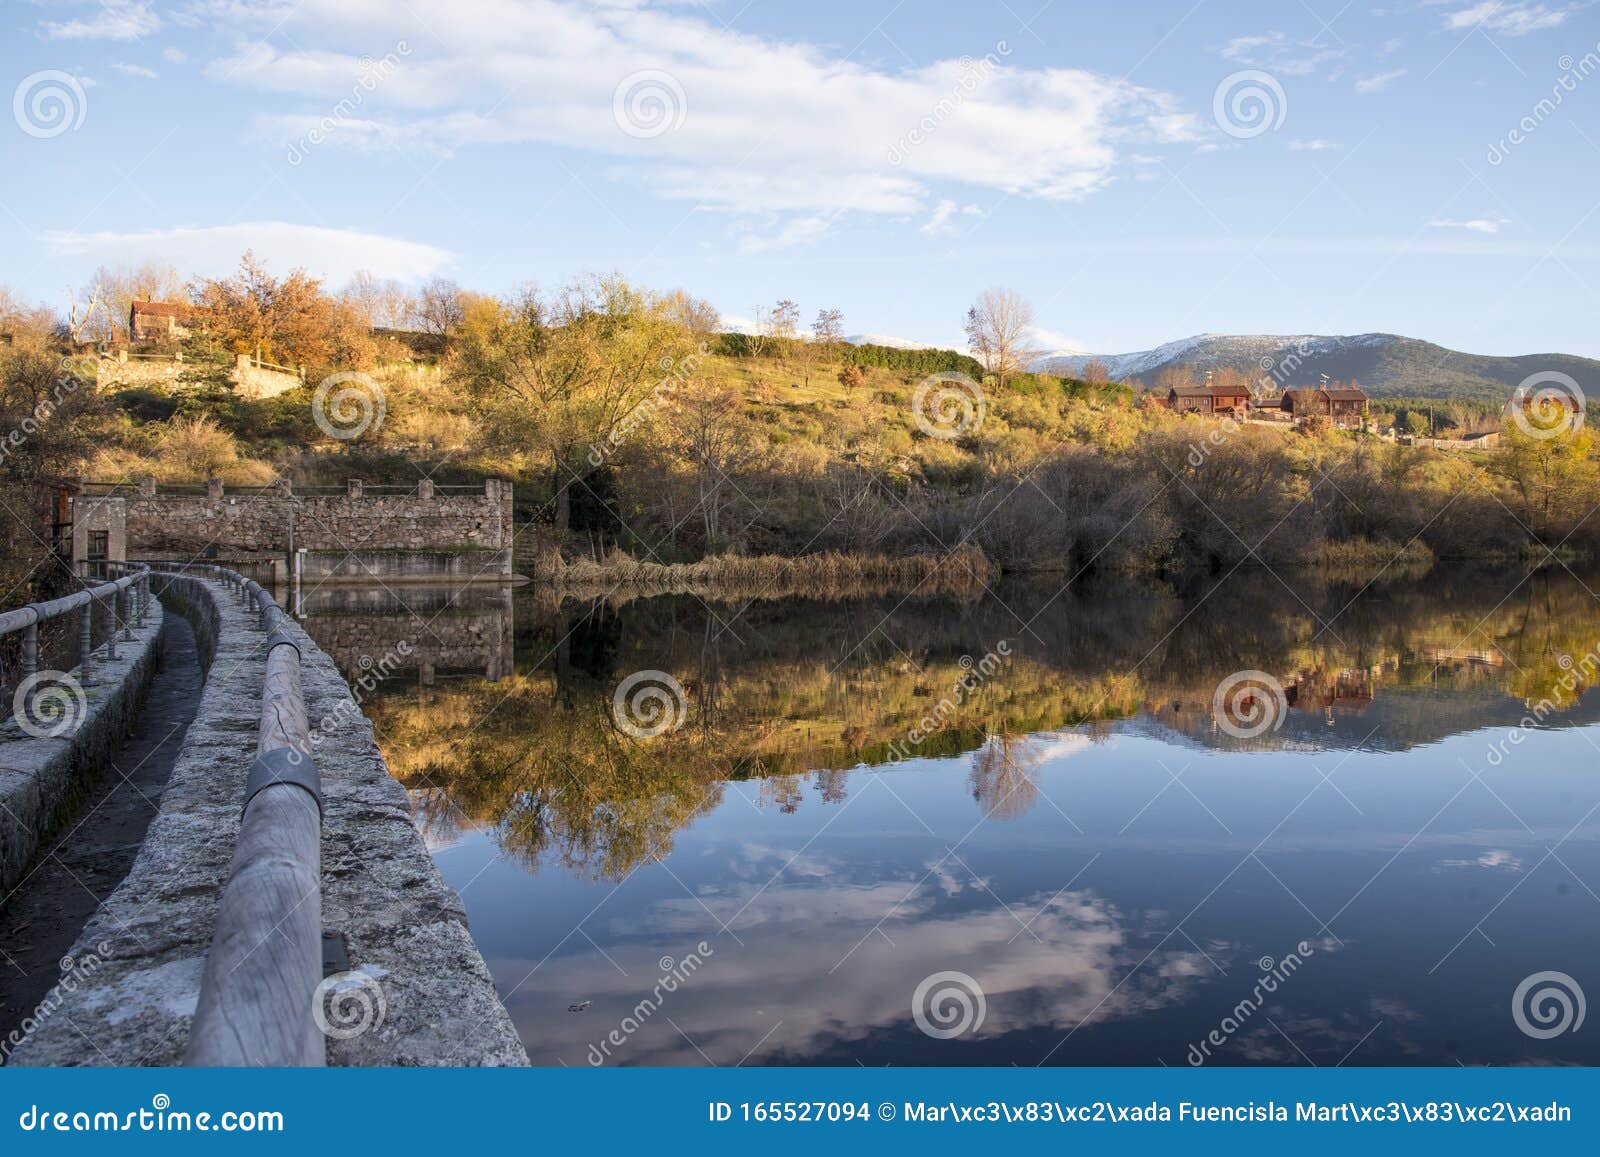 valsain reservoir in segovia